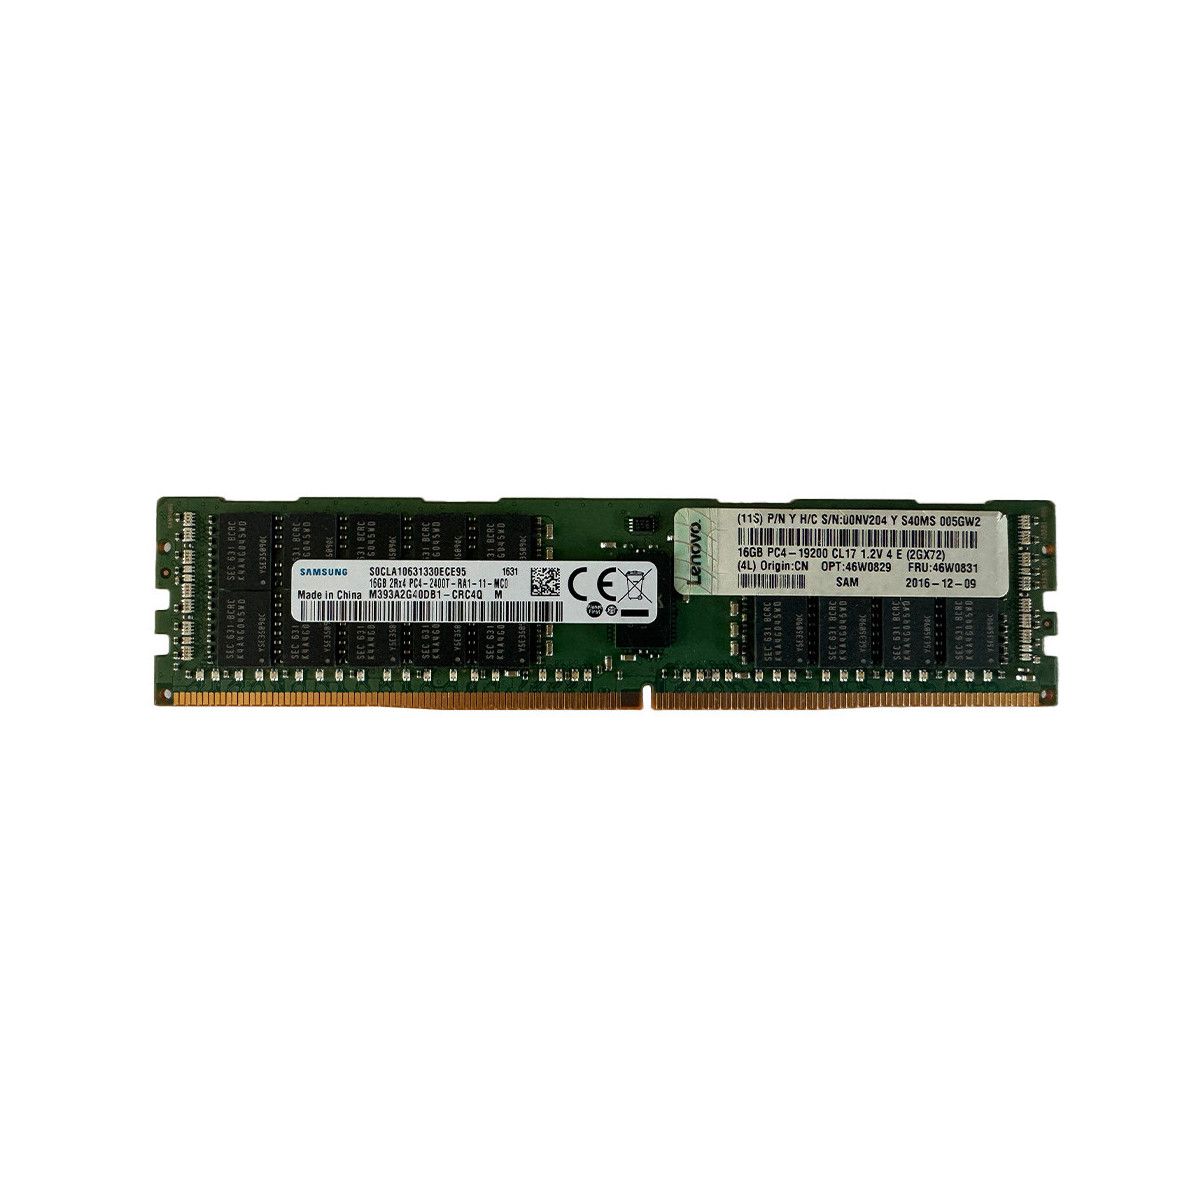 A8797578-MS - Memstar 1x 16GB DDR4-2400 RDIMM PC4-19200T-R - Mem-Star Kompatibel OEM Speichermedien 1 - Memstar 